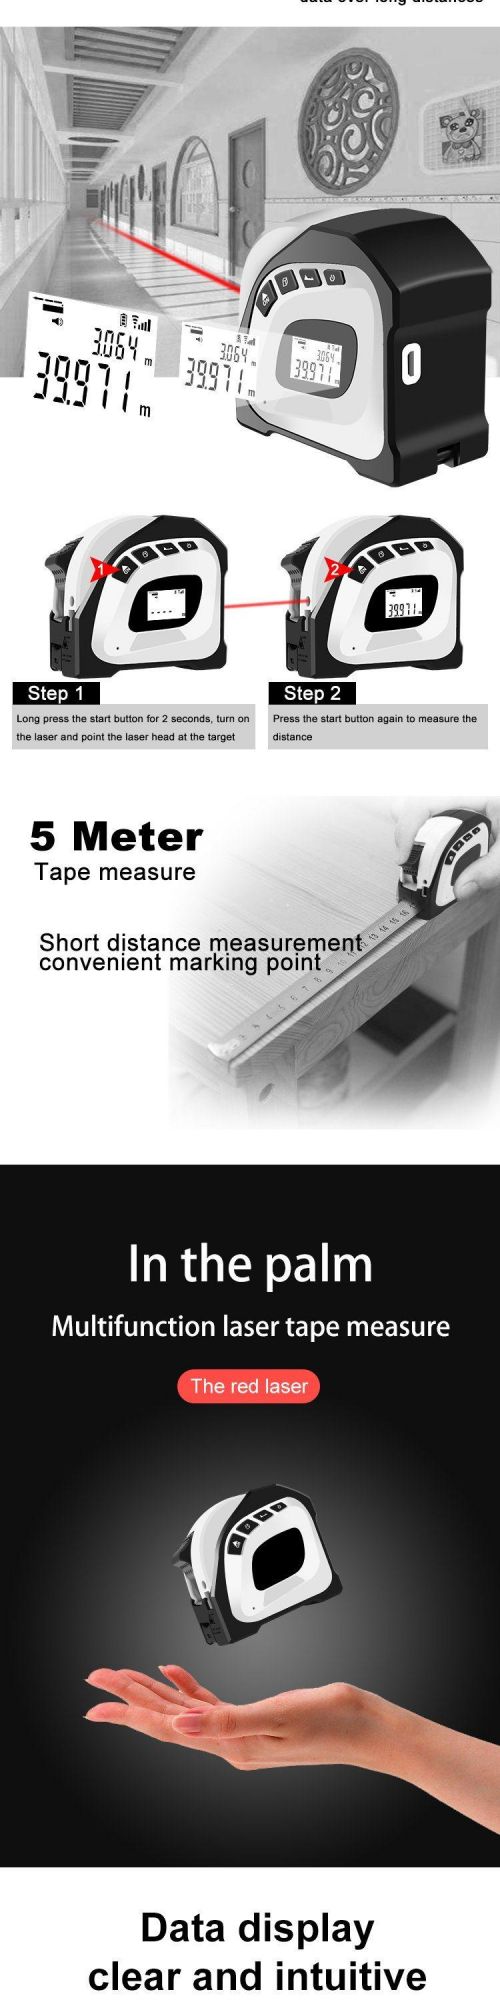 New Product OEM 40m Laser Distance Tap Measurer